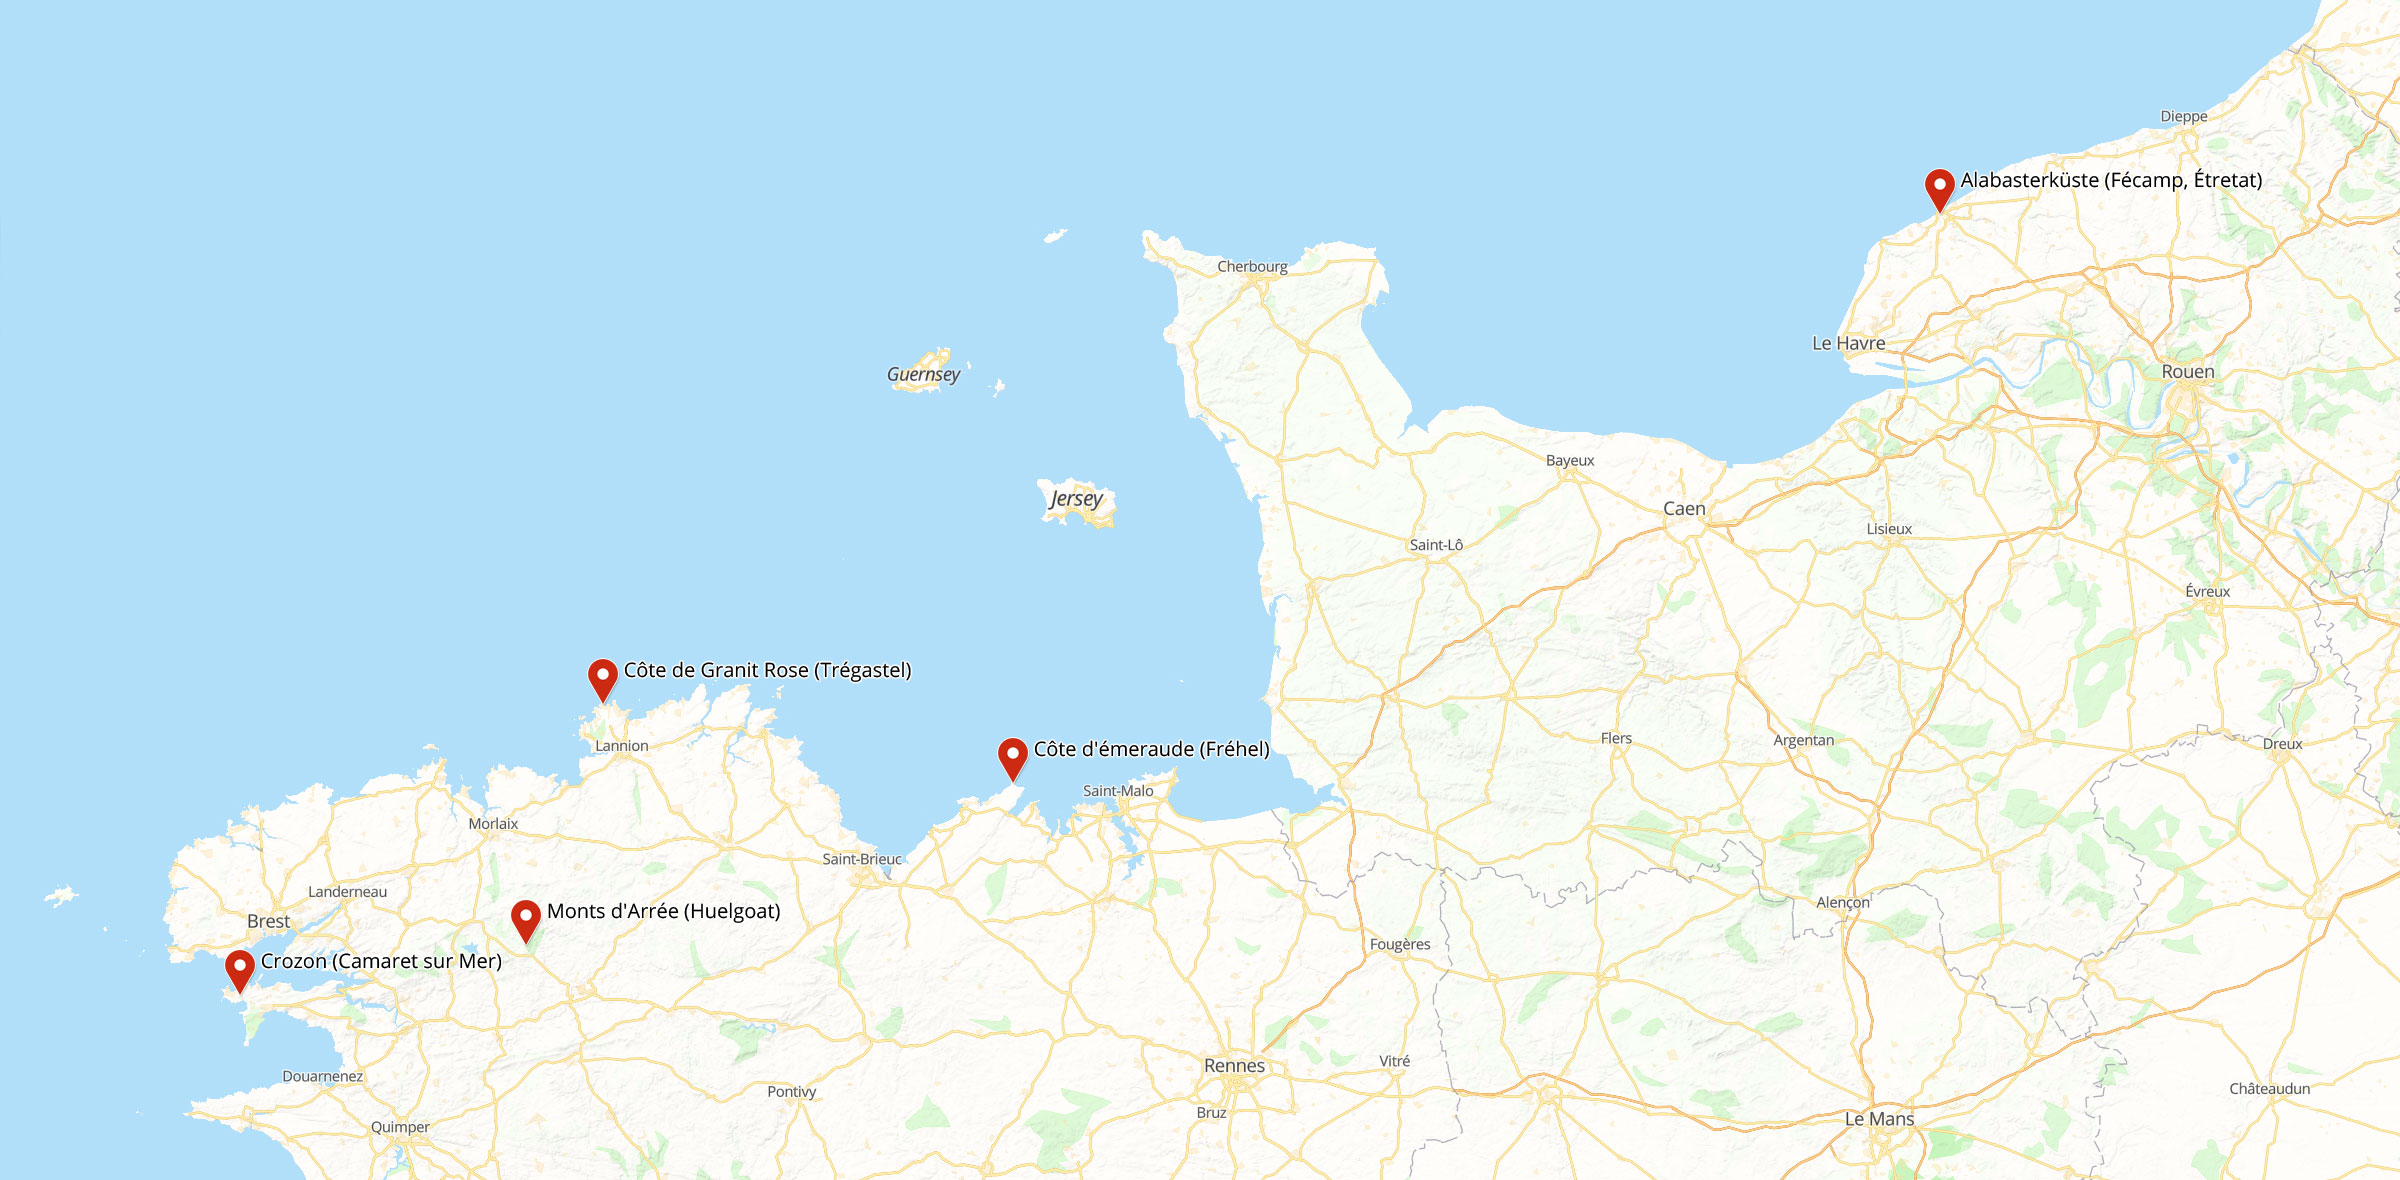 Karte der Tour durch die Normandie und Bretagne